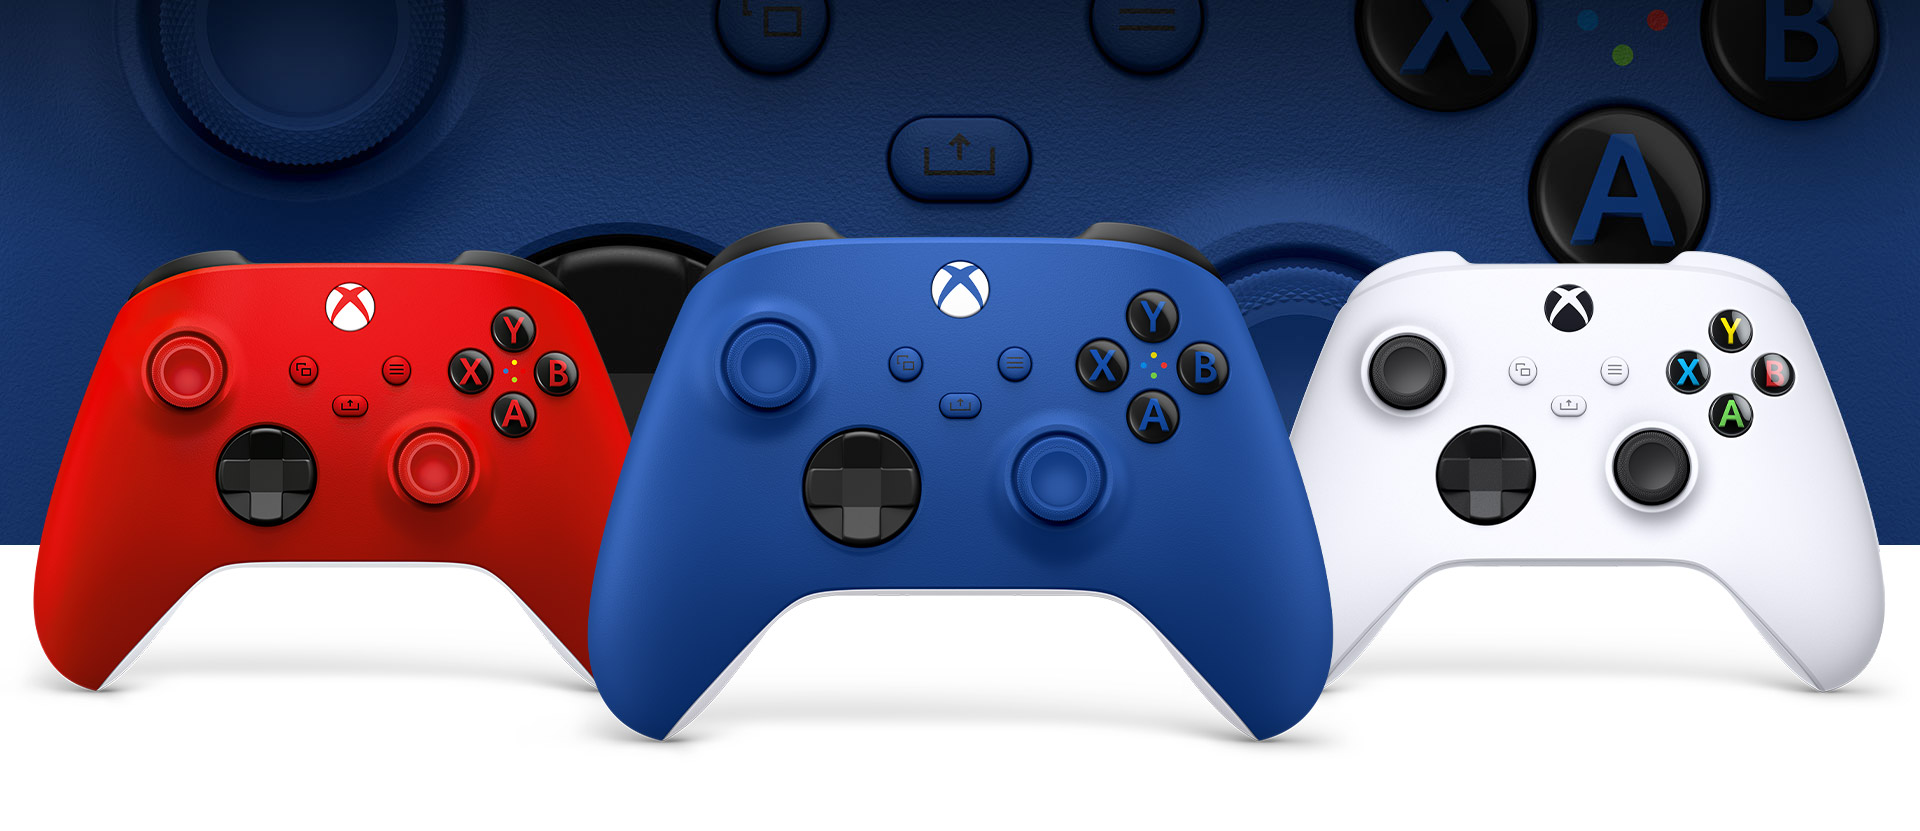 Controle Xbox Shock Blue à frente com os controles robot white e Pulse Red ao lado dele